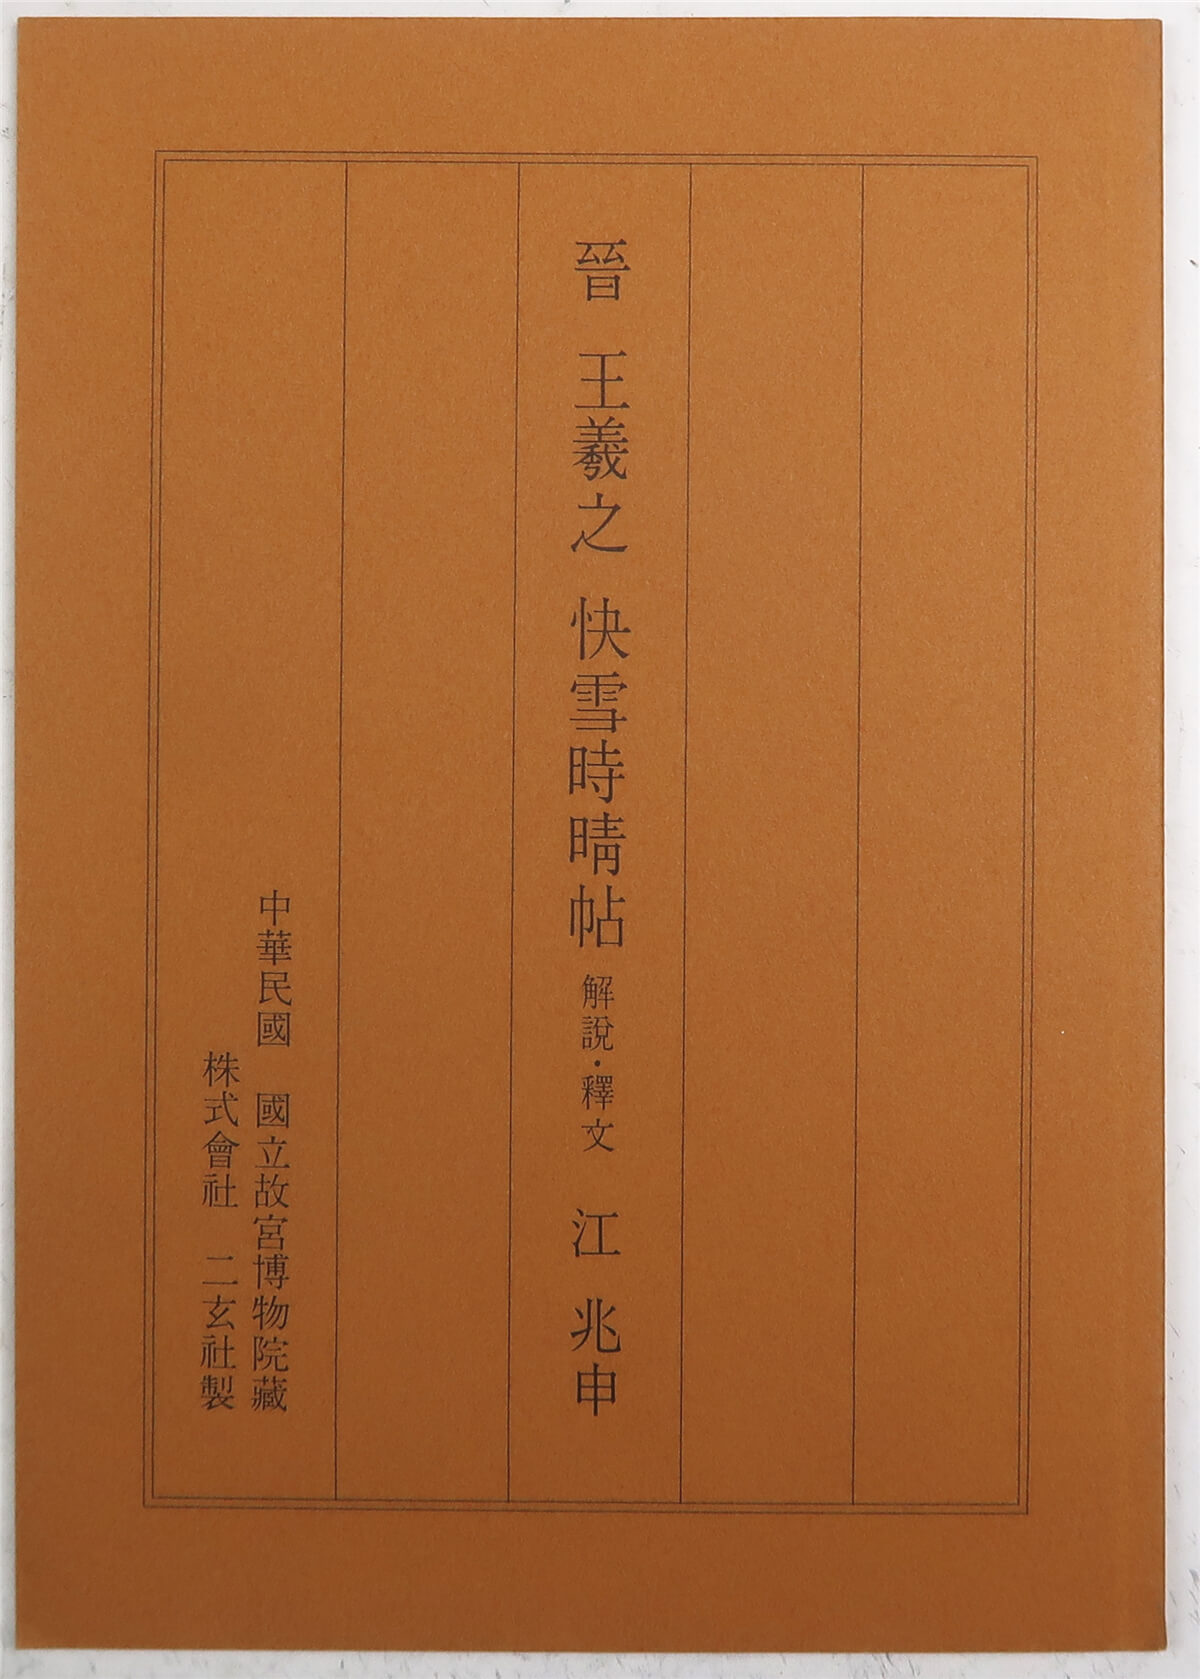 王羲之快雪时晴帖（台北故宫藏品·二玄社1980年原色影印版·8开经折装 